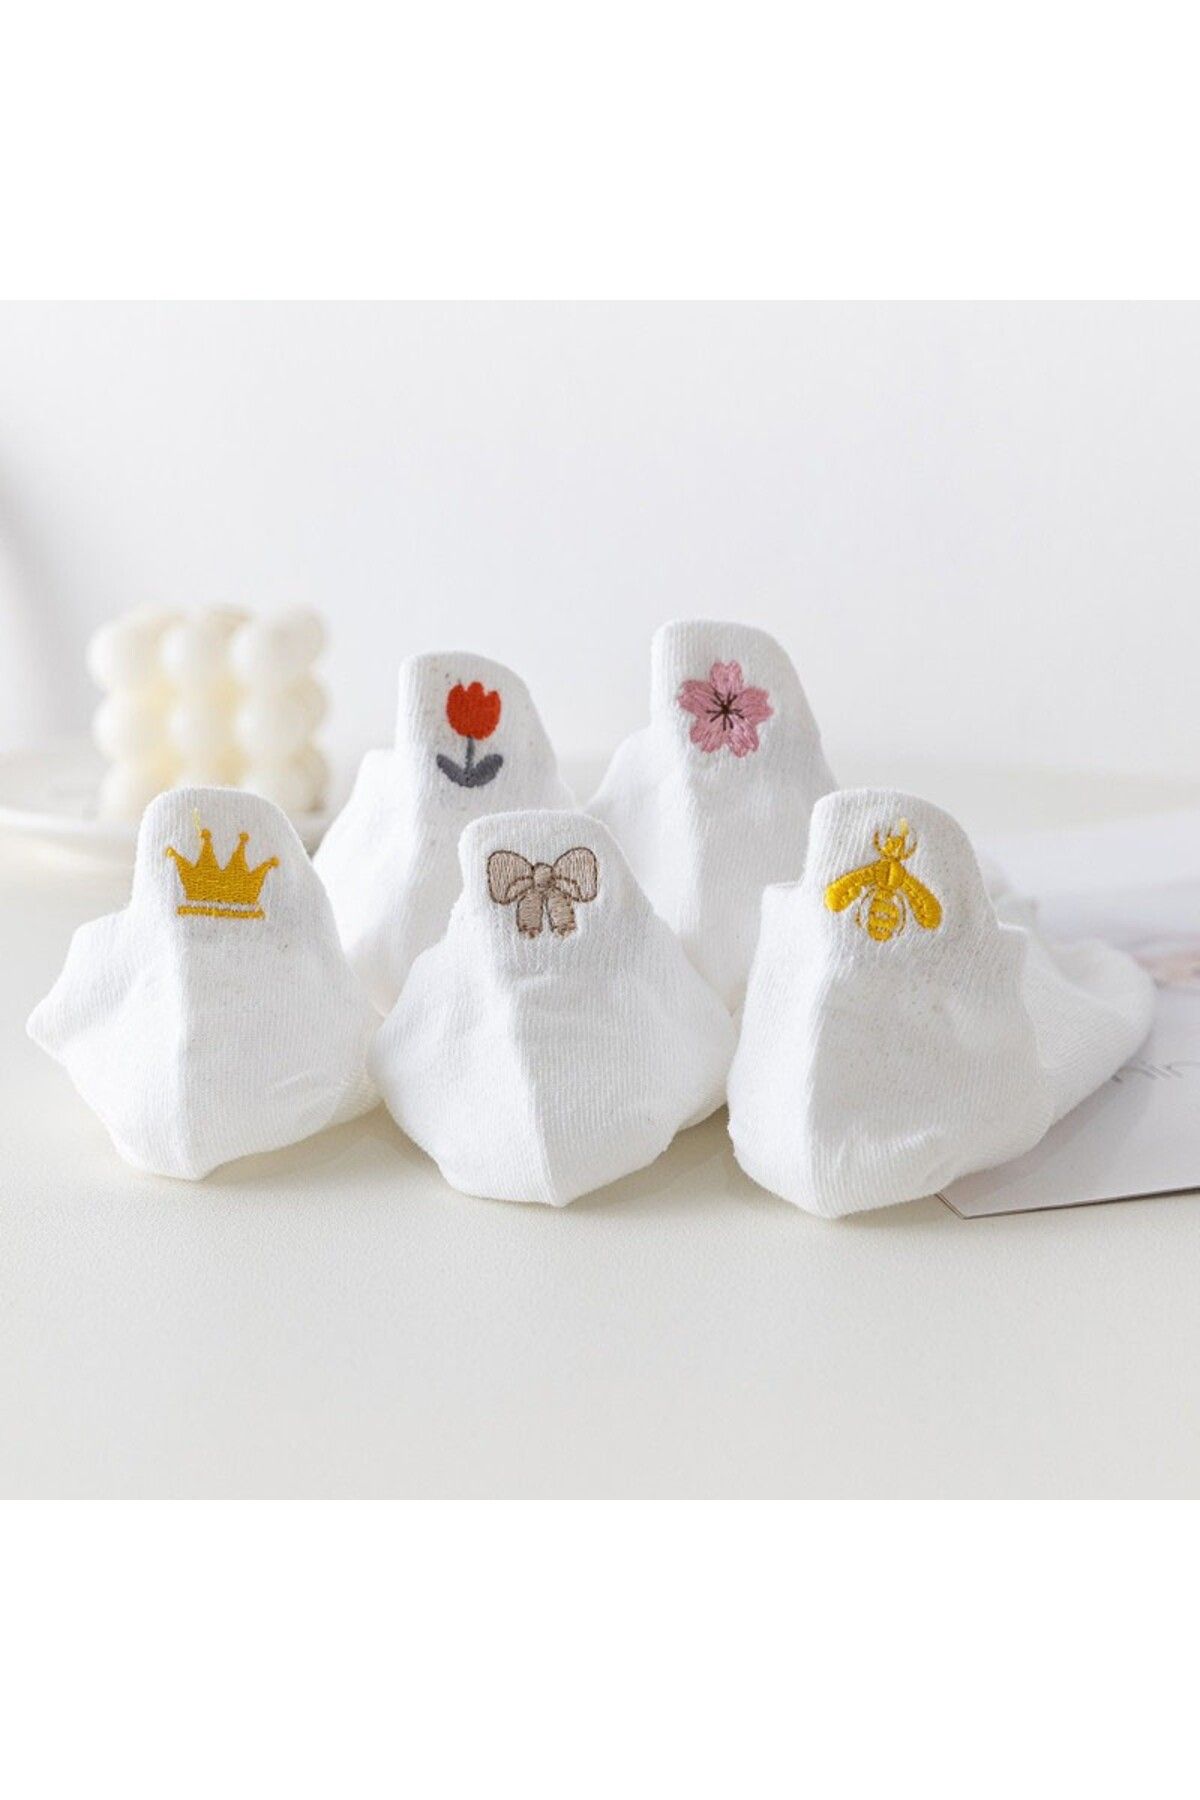 Socksmanya, 5 пар женских носков с милой вышивкой и белой пчелой, с цветочным узором çrmnya-0655263a5iyhghaar